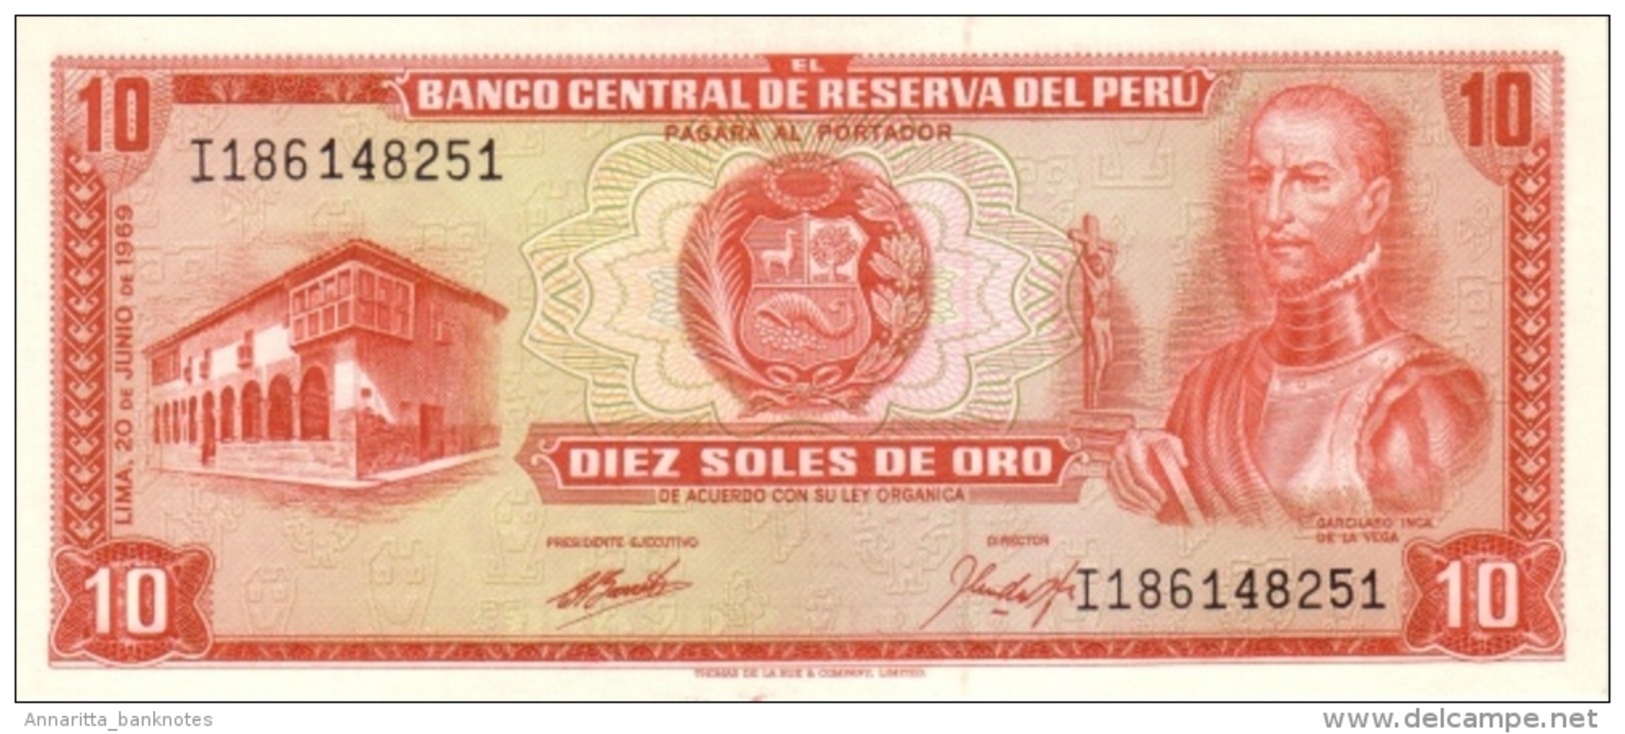 PERU 10 SOLES DE ORO 1969 P-100a UNC [PE100a] - Peru